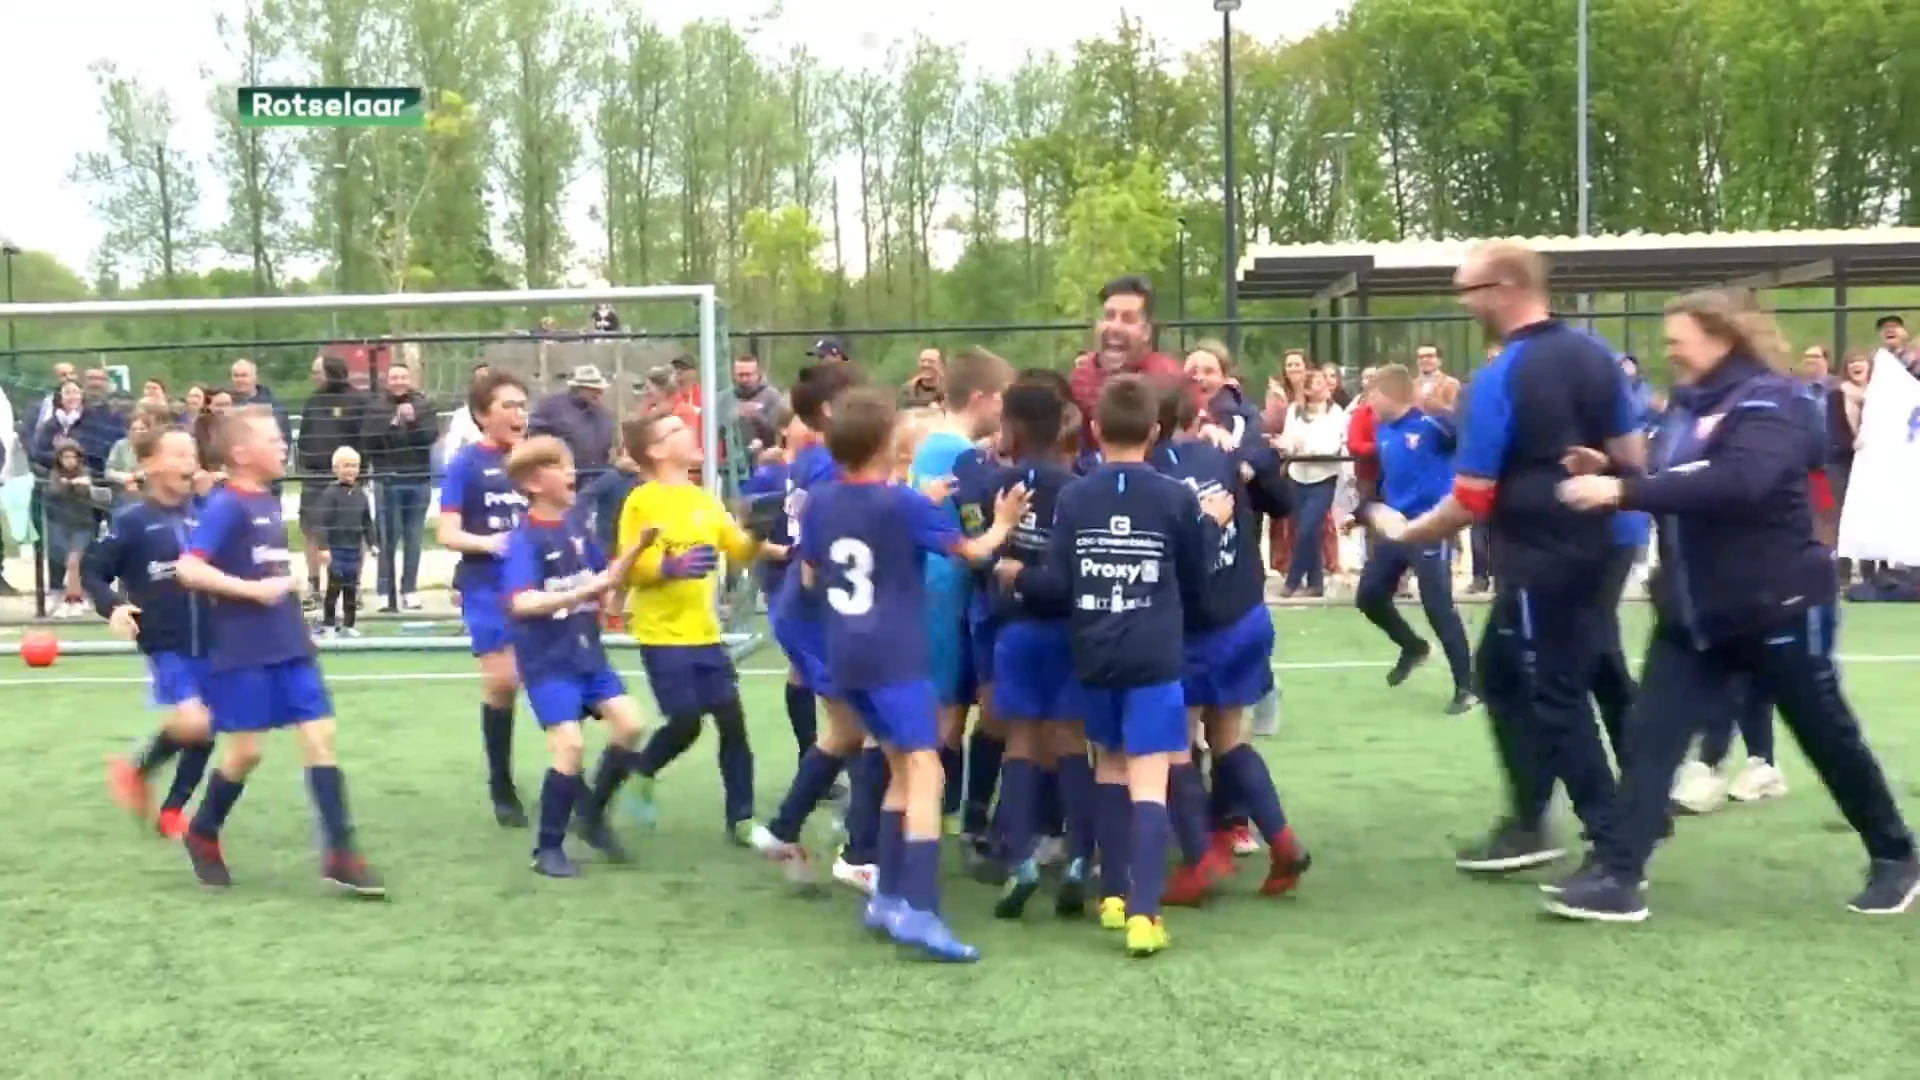 Regionale jeugdploegen schitteren op Jeugdcup in Rotselaar: "Dit gebeurt niet elke dag"